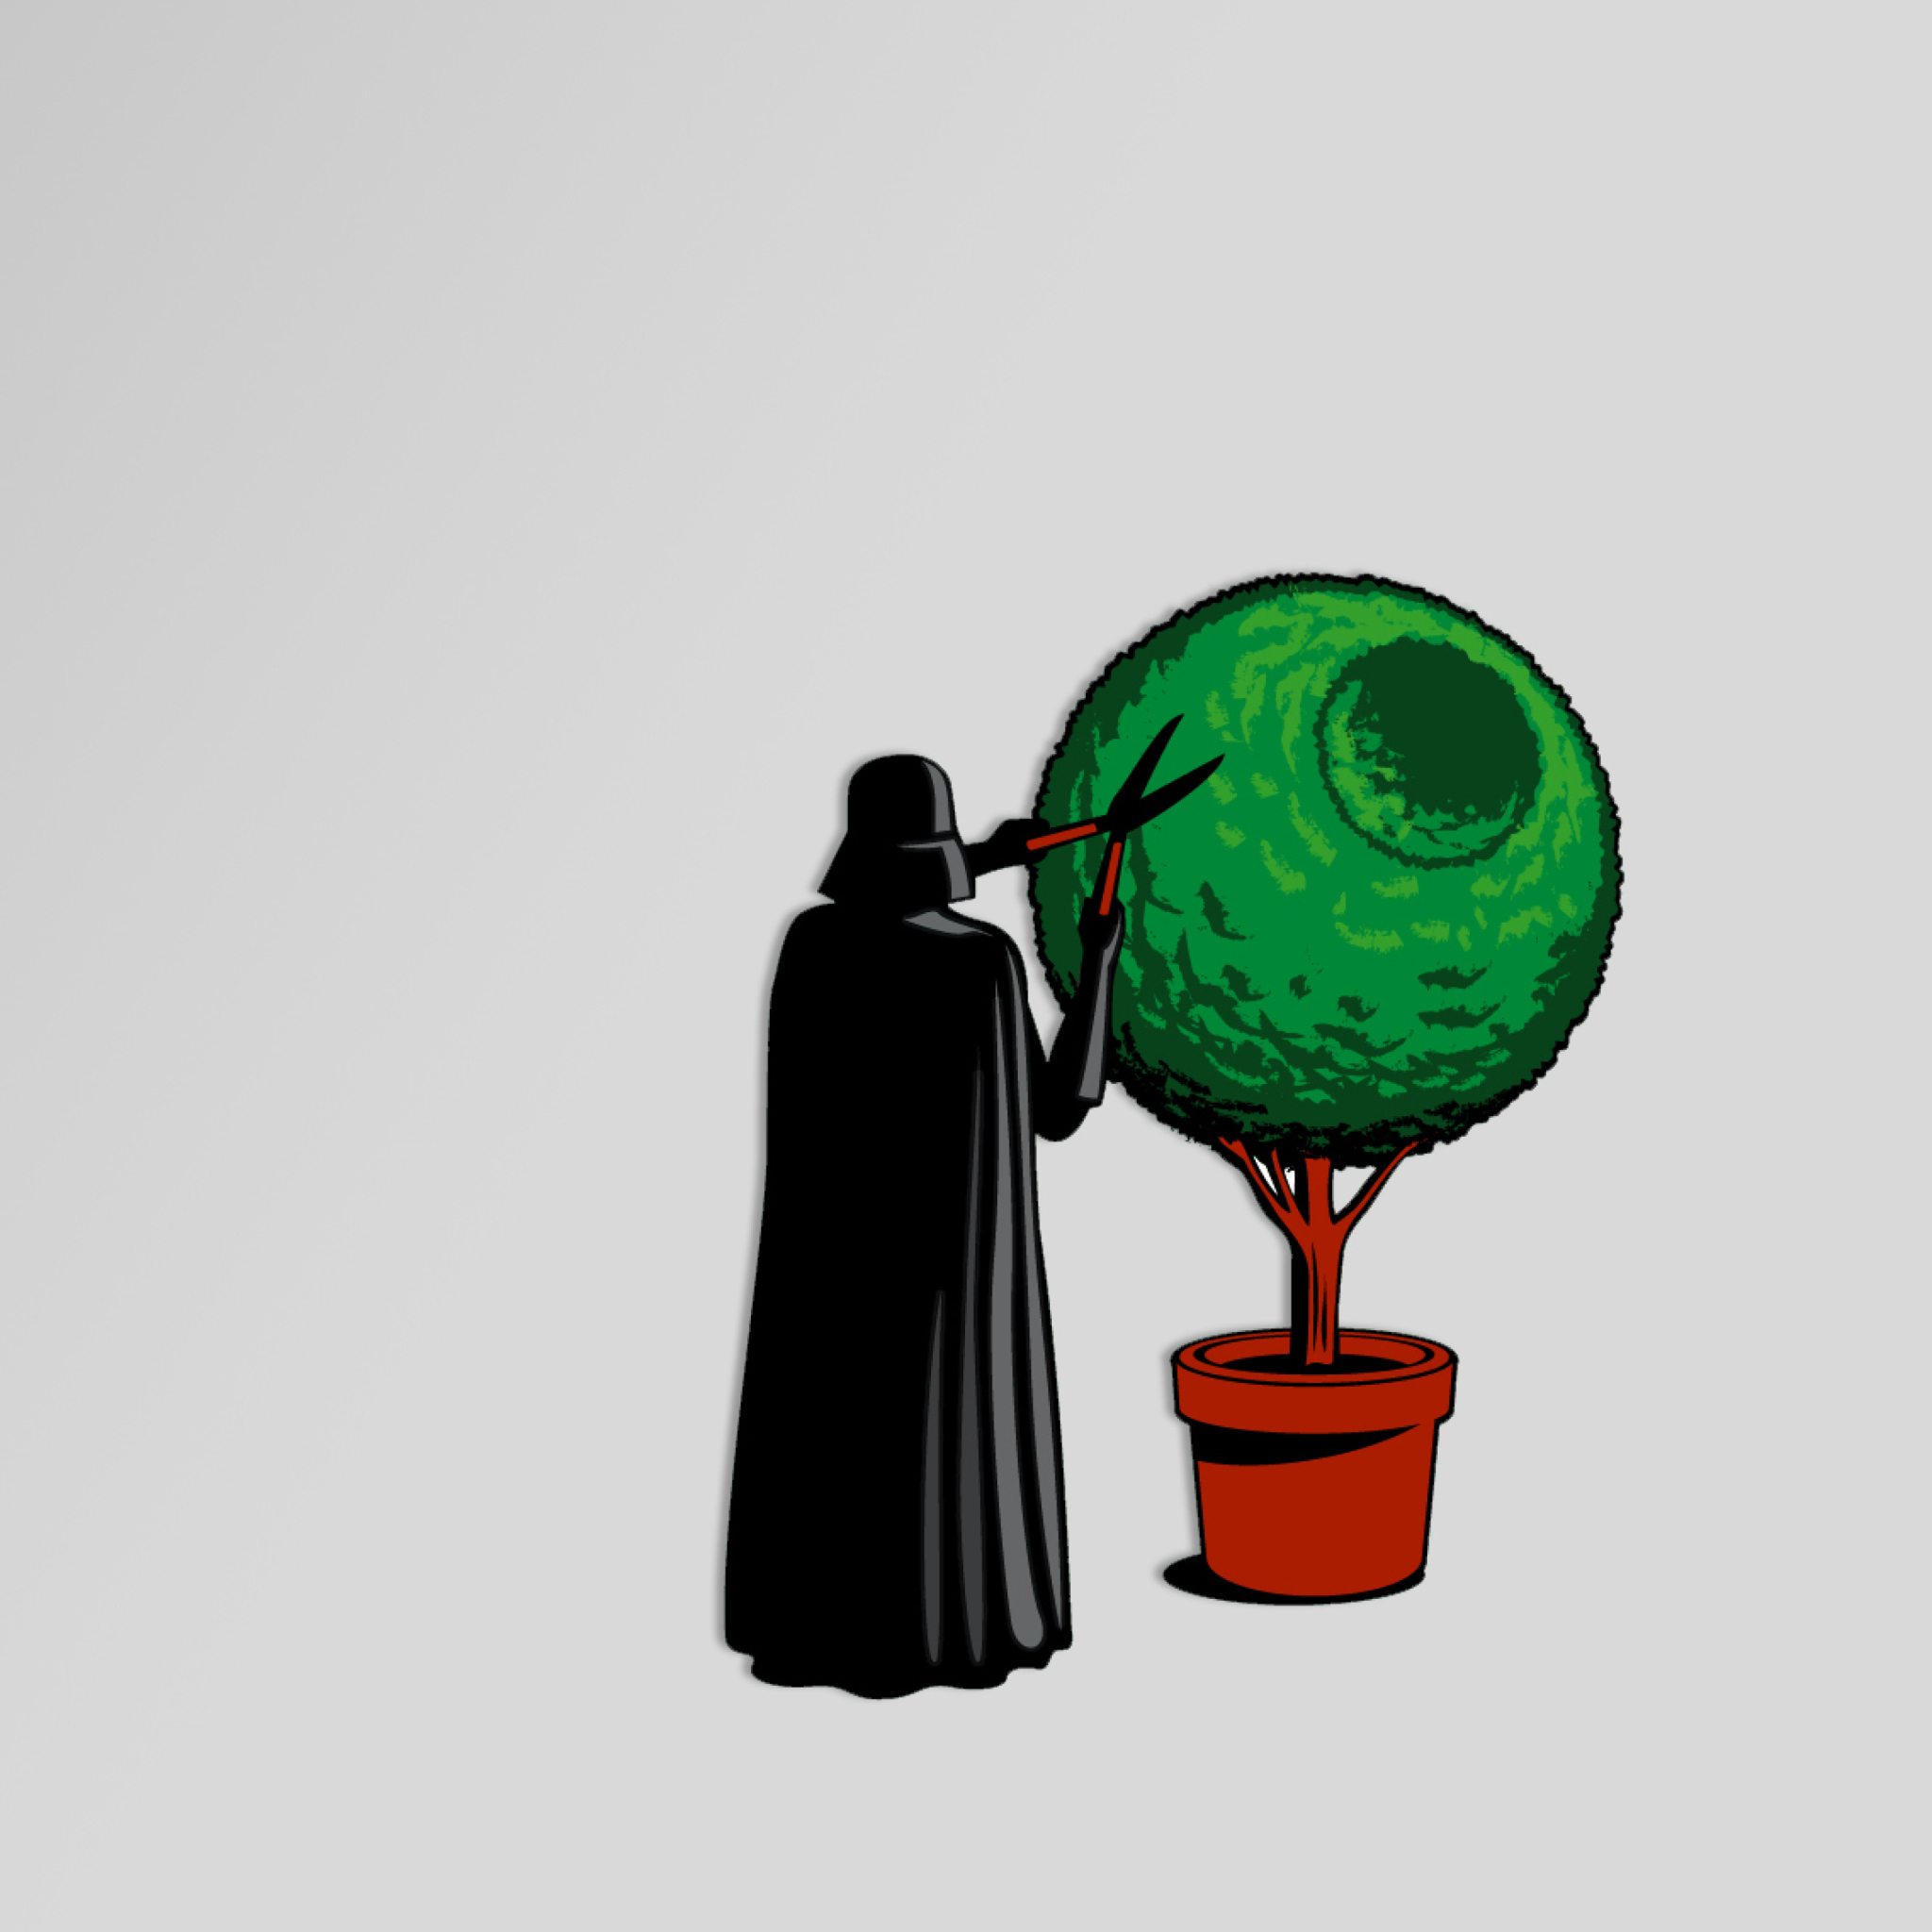 Darth Vader Funny Illustration wallpaper 2048x2048